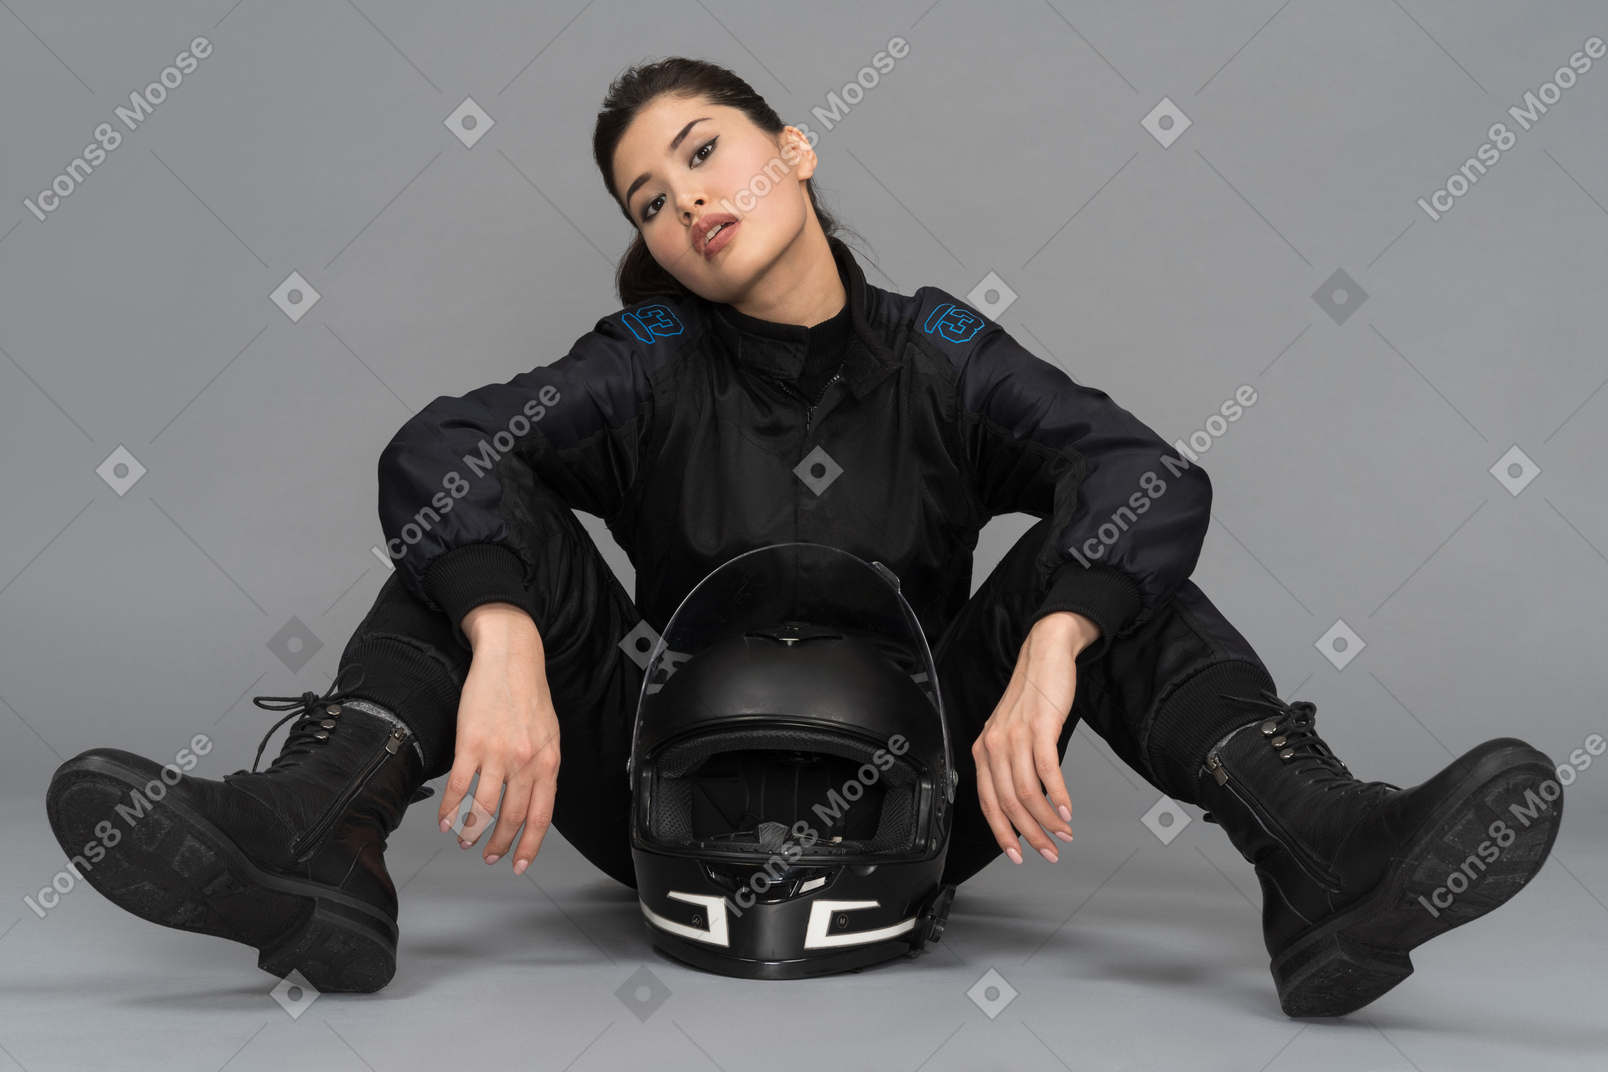 彼女の足の間にヘルメットをかぶって座っている自信がある若い女性